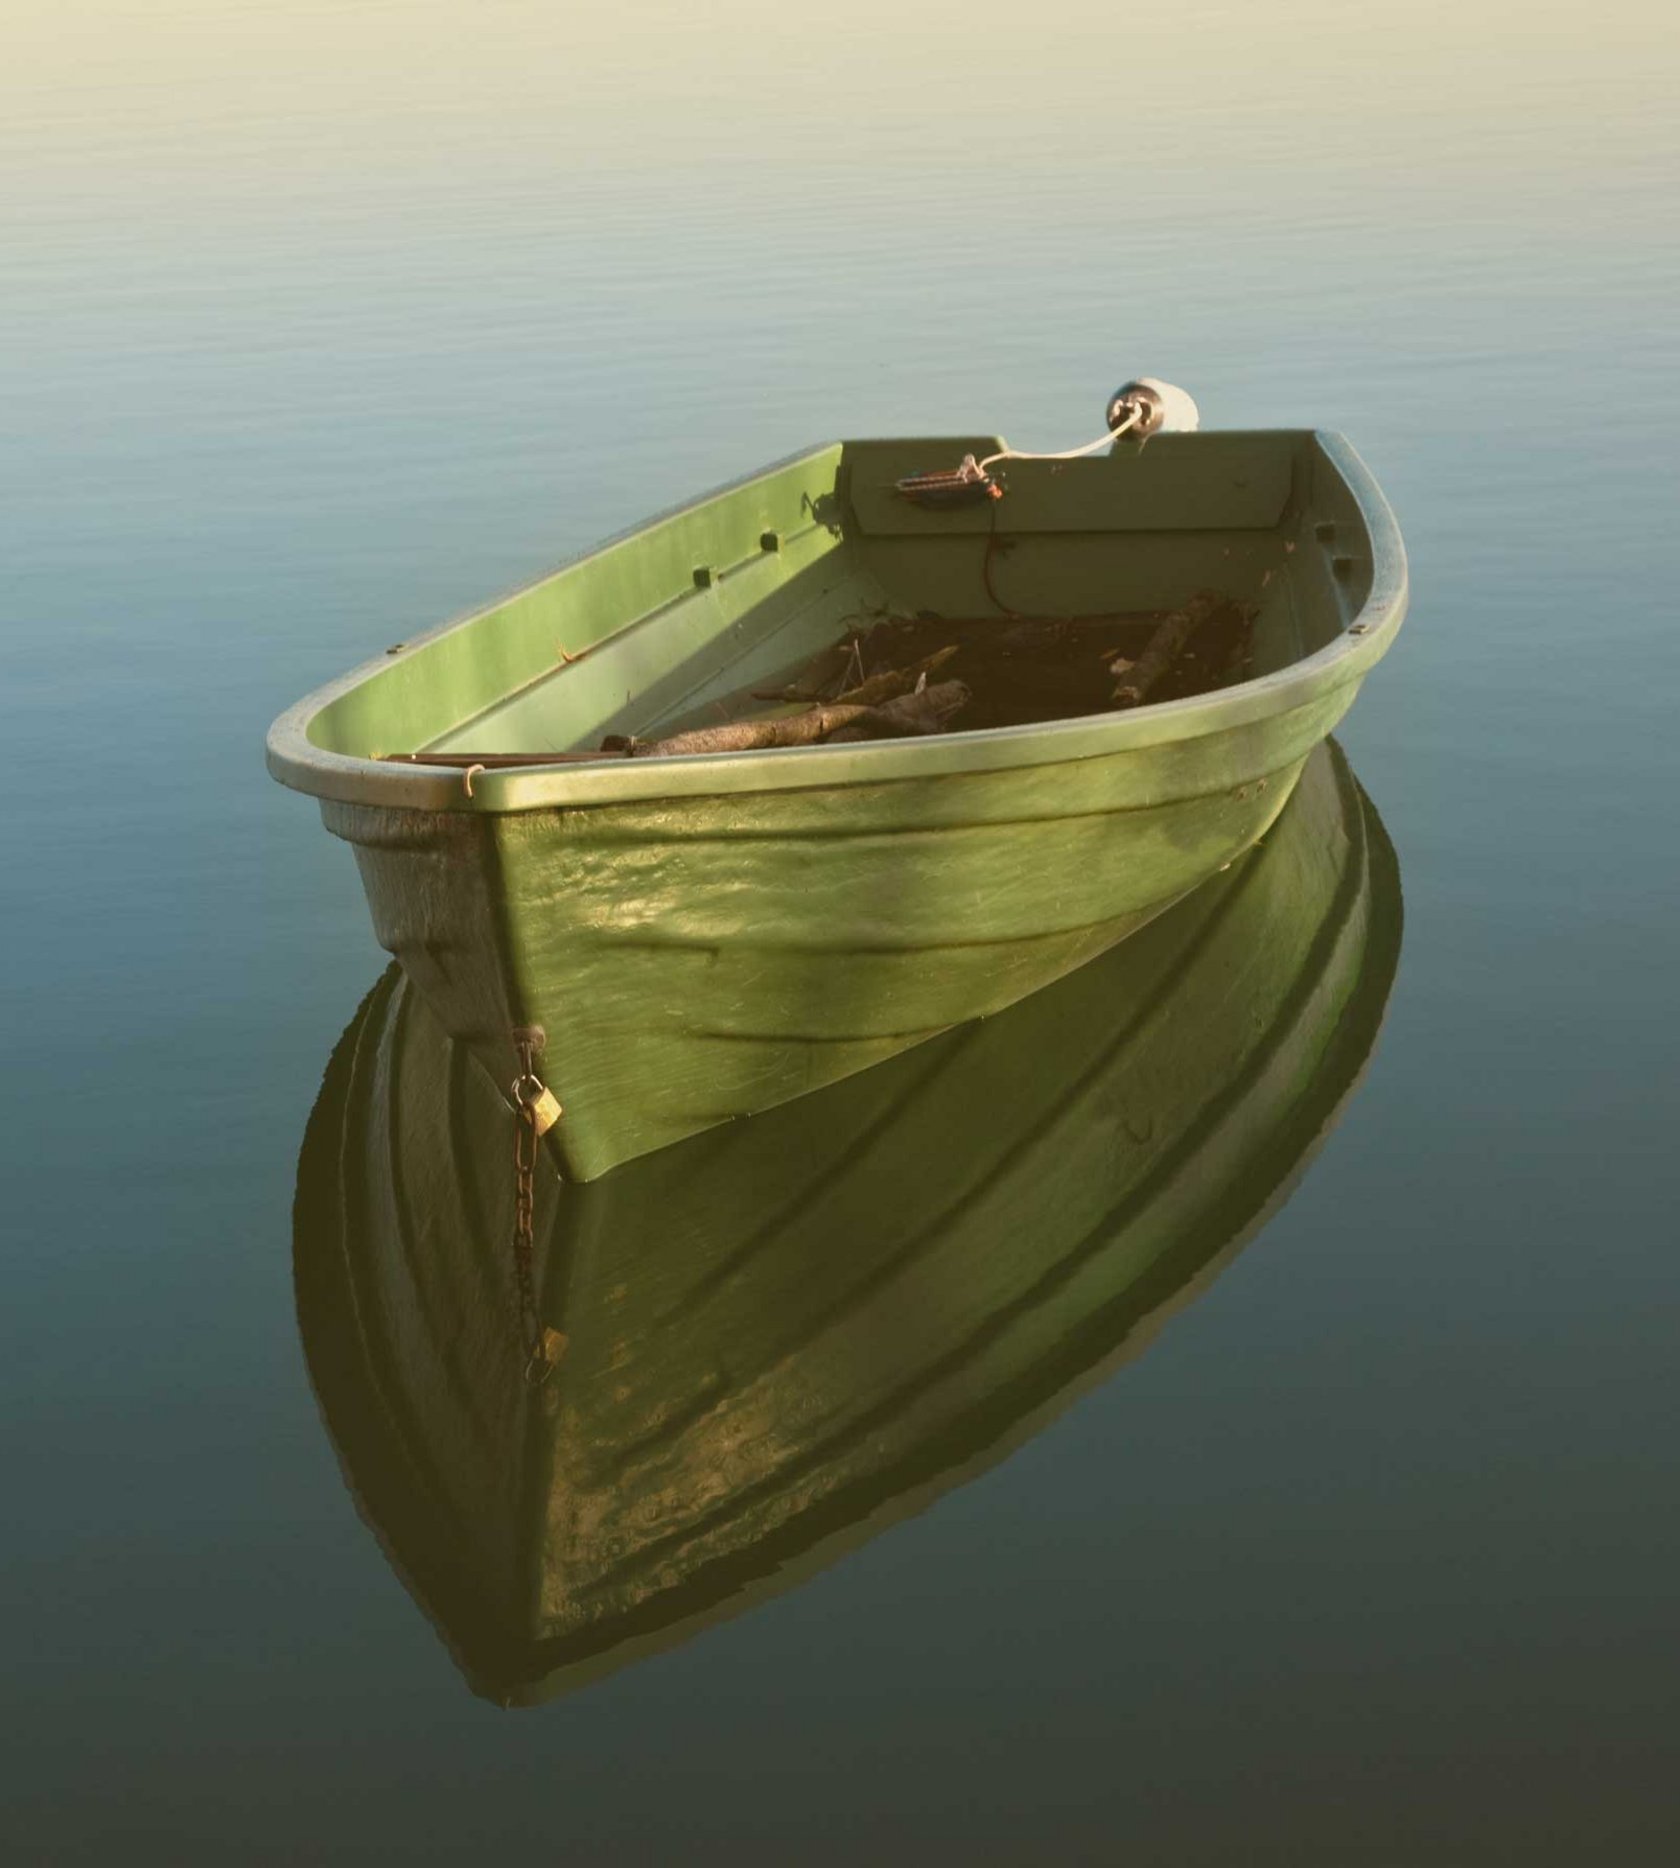 Leeres Boot auf einem See